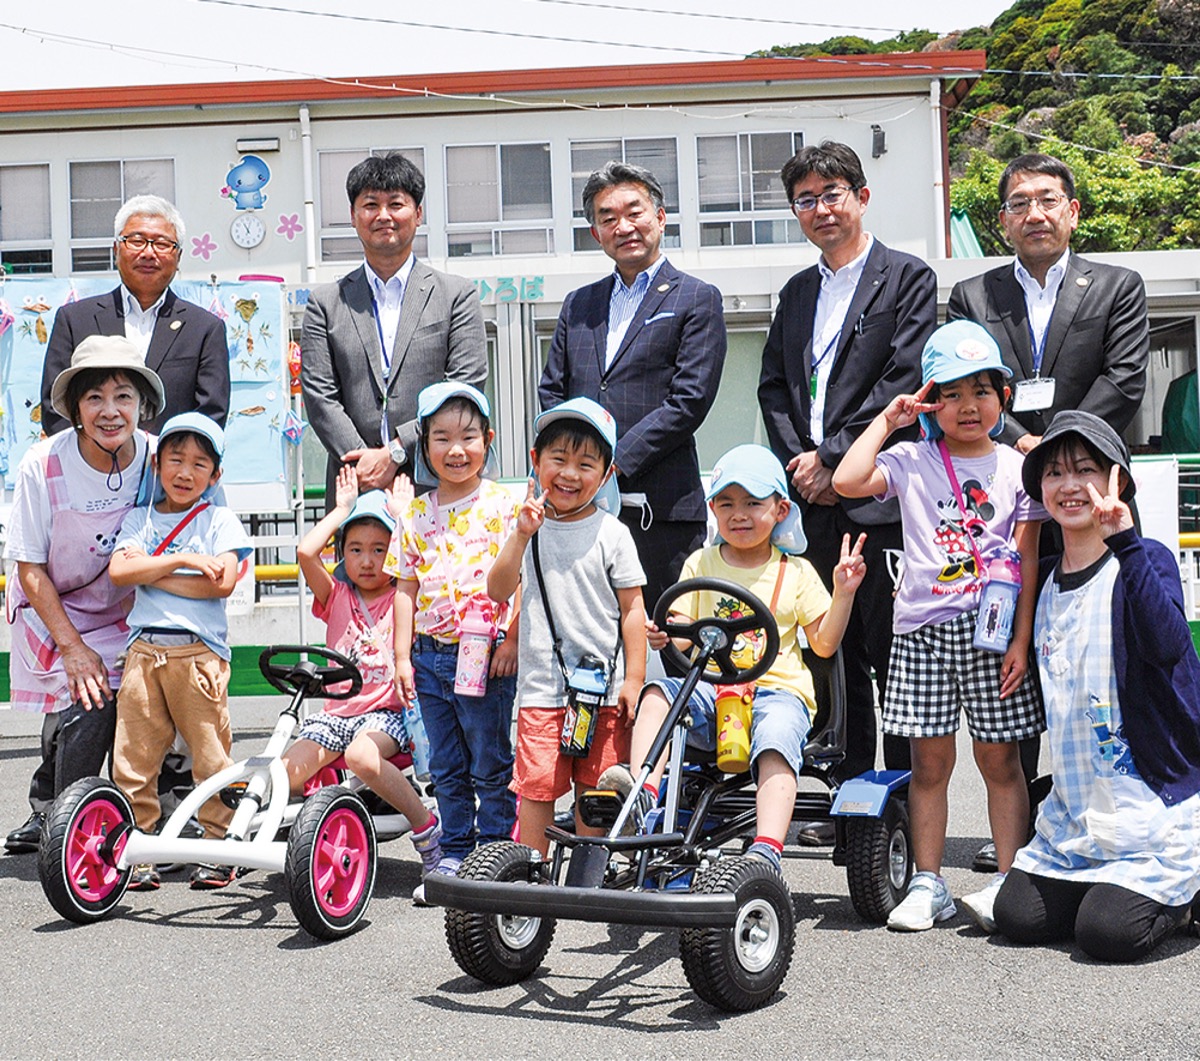 シティサポートよこすか 交通公園に自転車寄贈 横須賀 タウンニュース